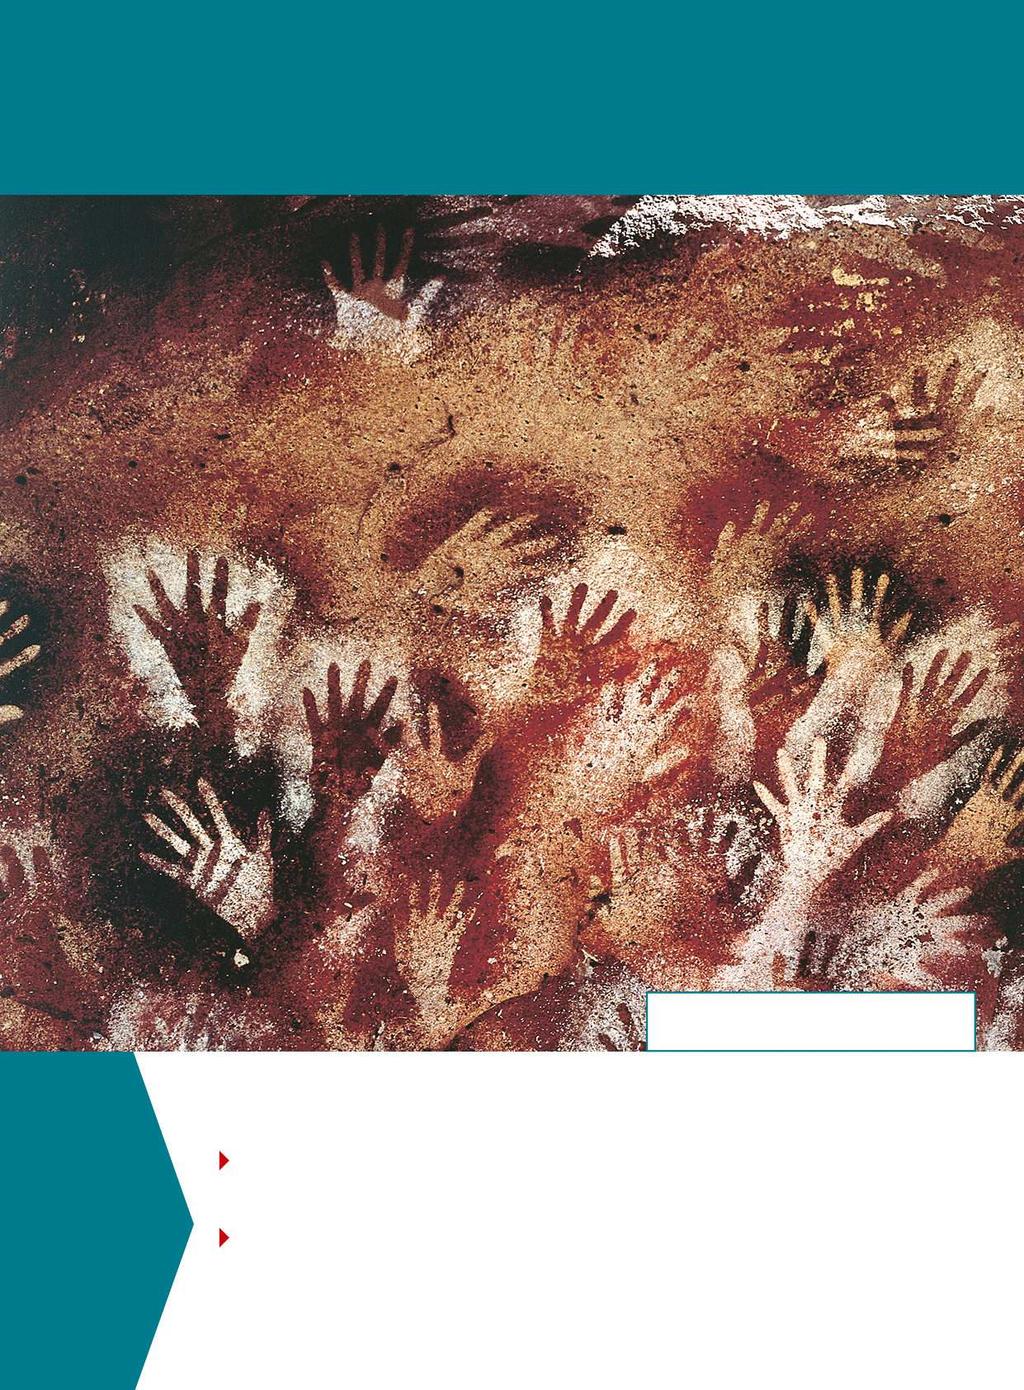 1. L ARTE DELLA PREISTORIA Cueva de las Manos (Grotta delle mani), 13 000-9500 anni fa, Argentina.